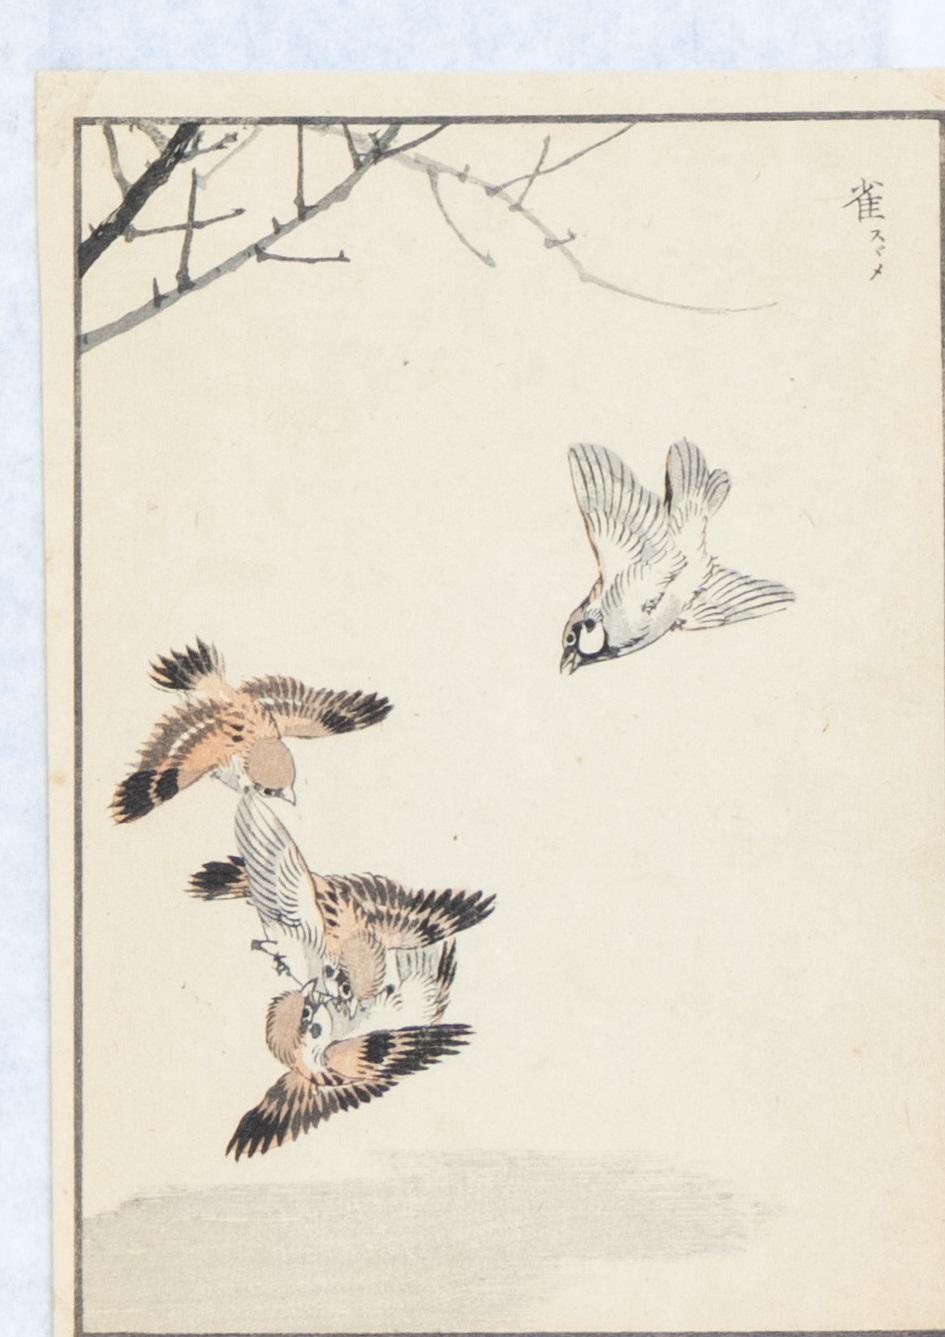 Kono Naotoyo Bairei (1844 - 1895) Bairei Hyakucho Gafu
11 houtsneden van vogels - drie met elk twee stukjes tape op papier geplakt. B ca. 20.5 x 14.5 cm pst. / alle niet ingelijst
ca. 20.5 x 14.5 cm pst. / alle niet ingelijst.